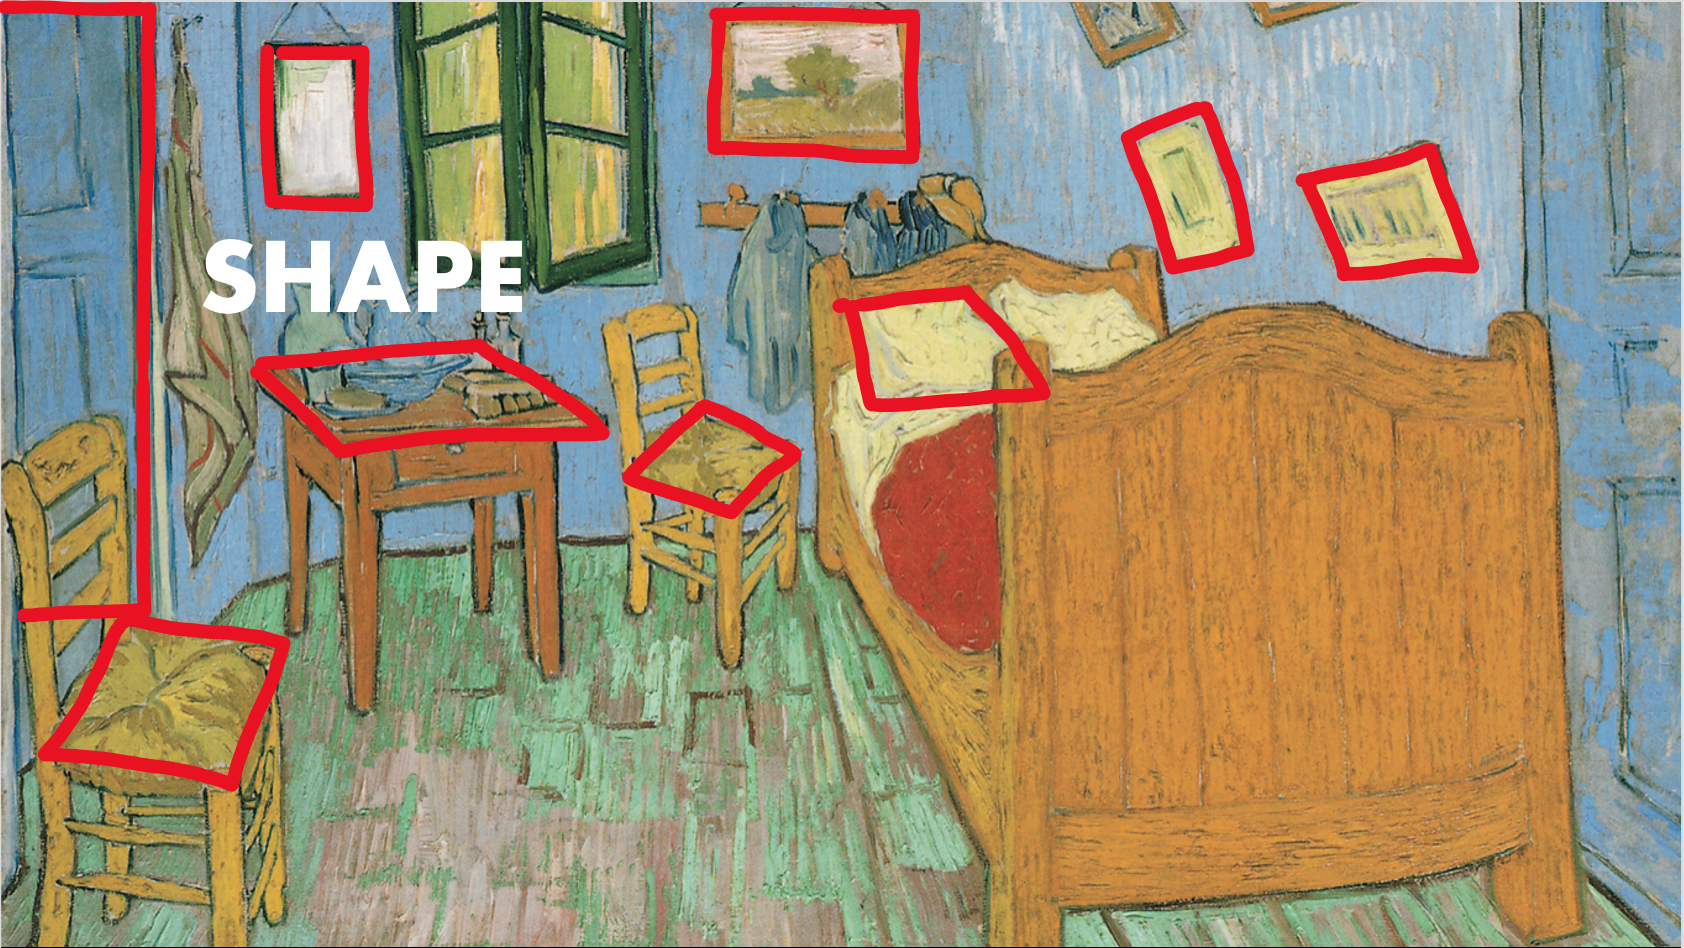 Analysis of Van Gogh's The bedrooom 